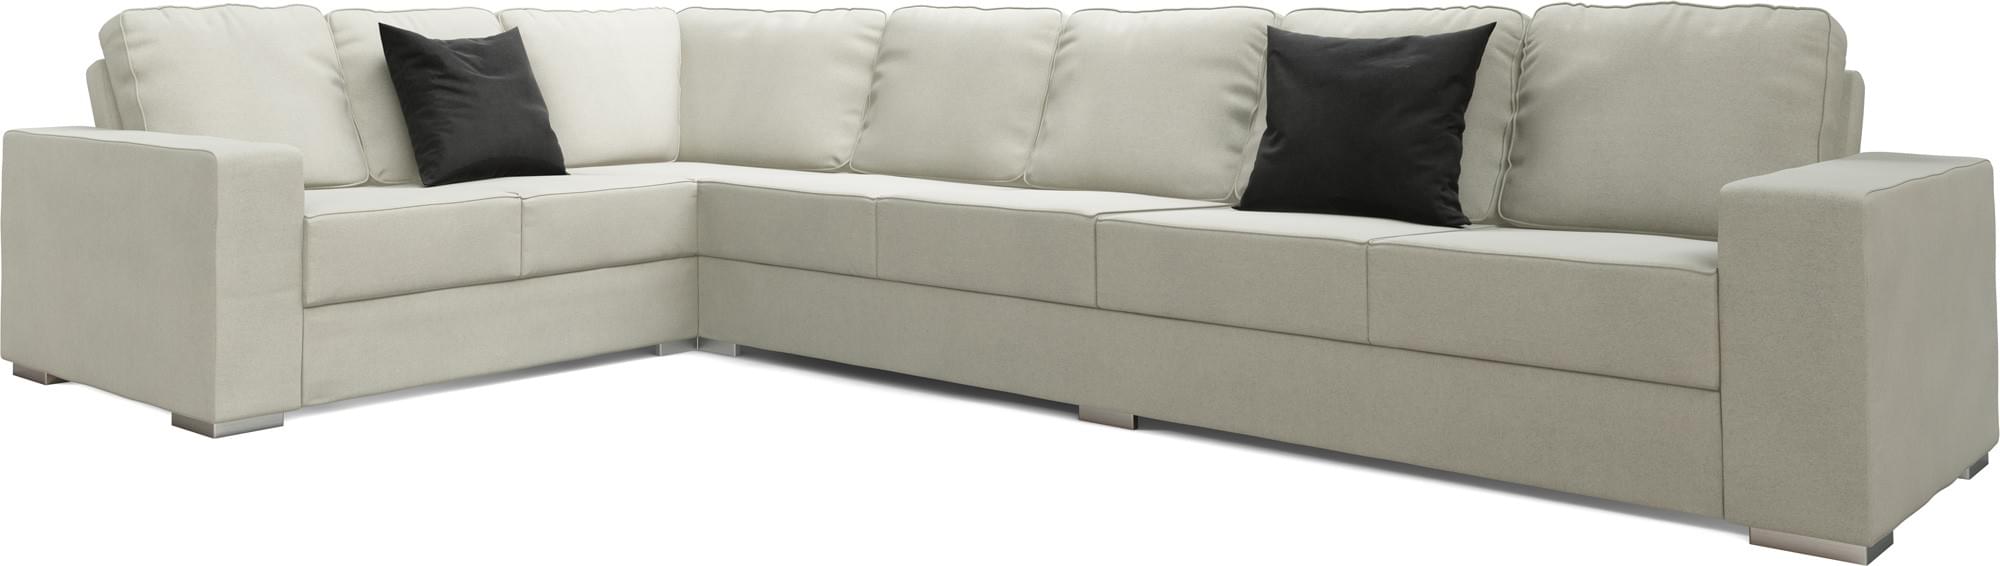 Ato 5X3 Corner Single Sofa Bed